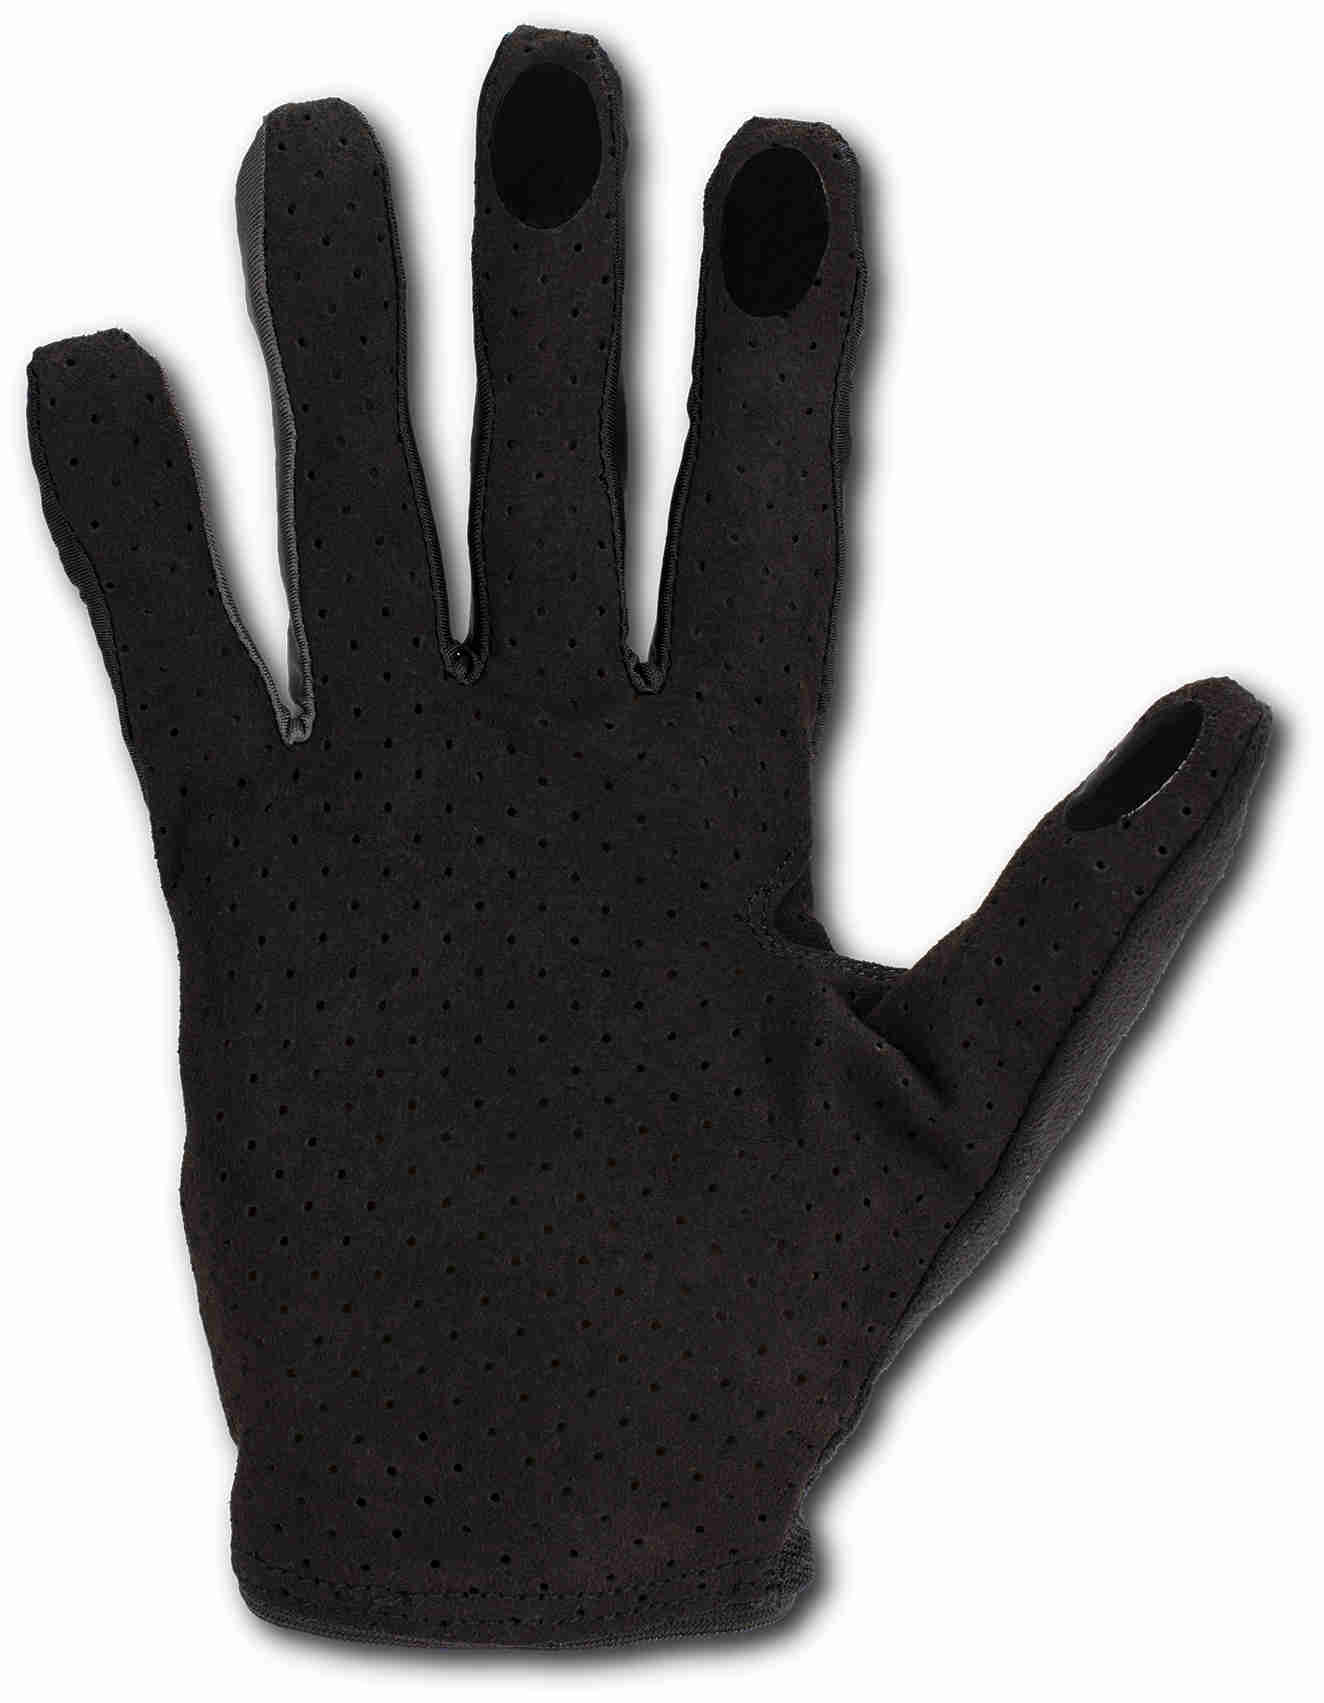 CUBE Gloves Performance Long Finger Blackline